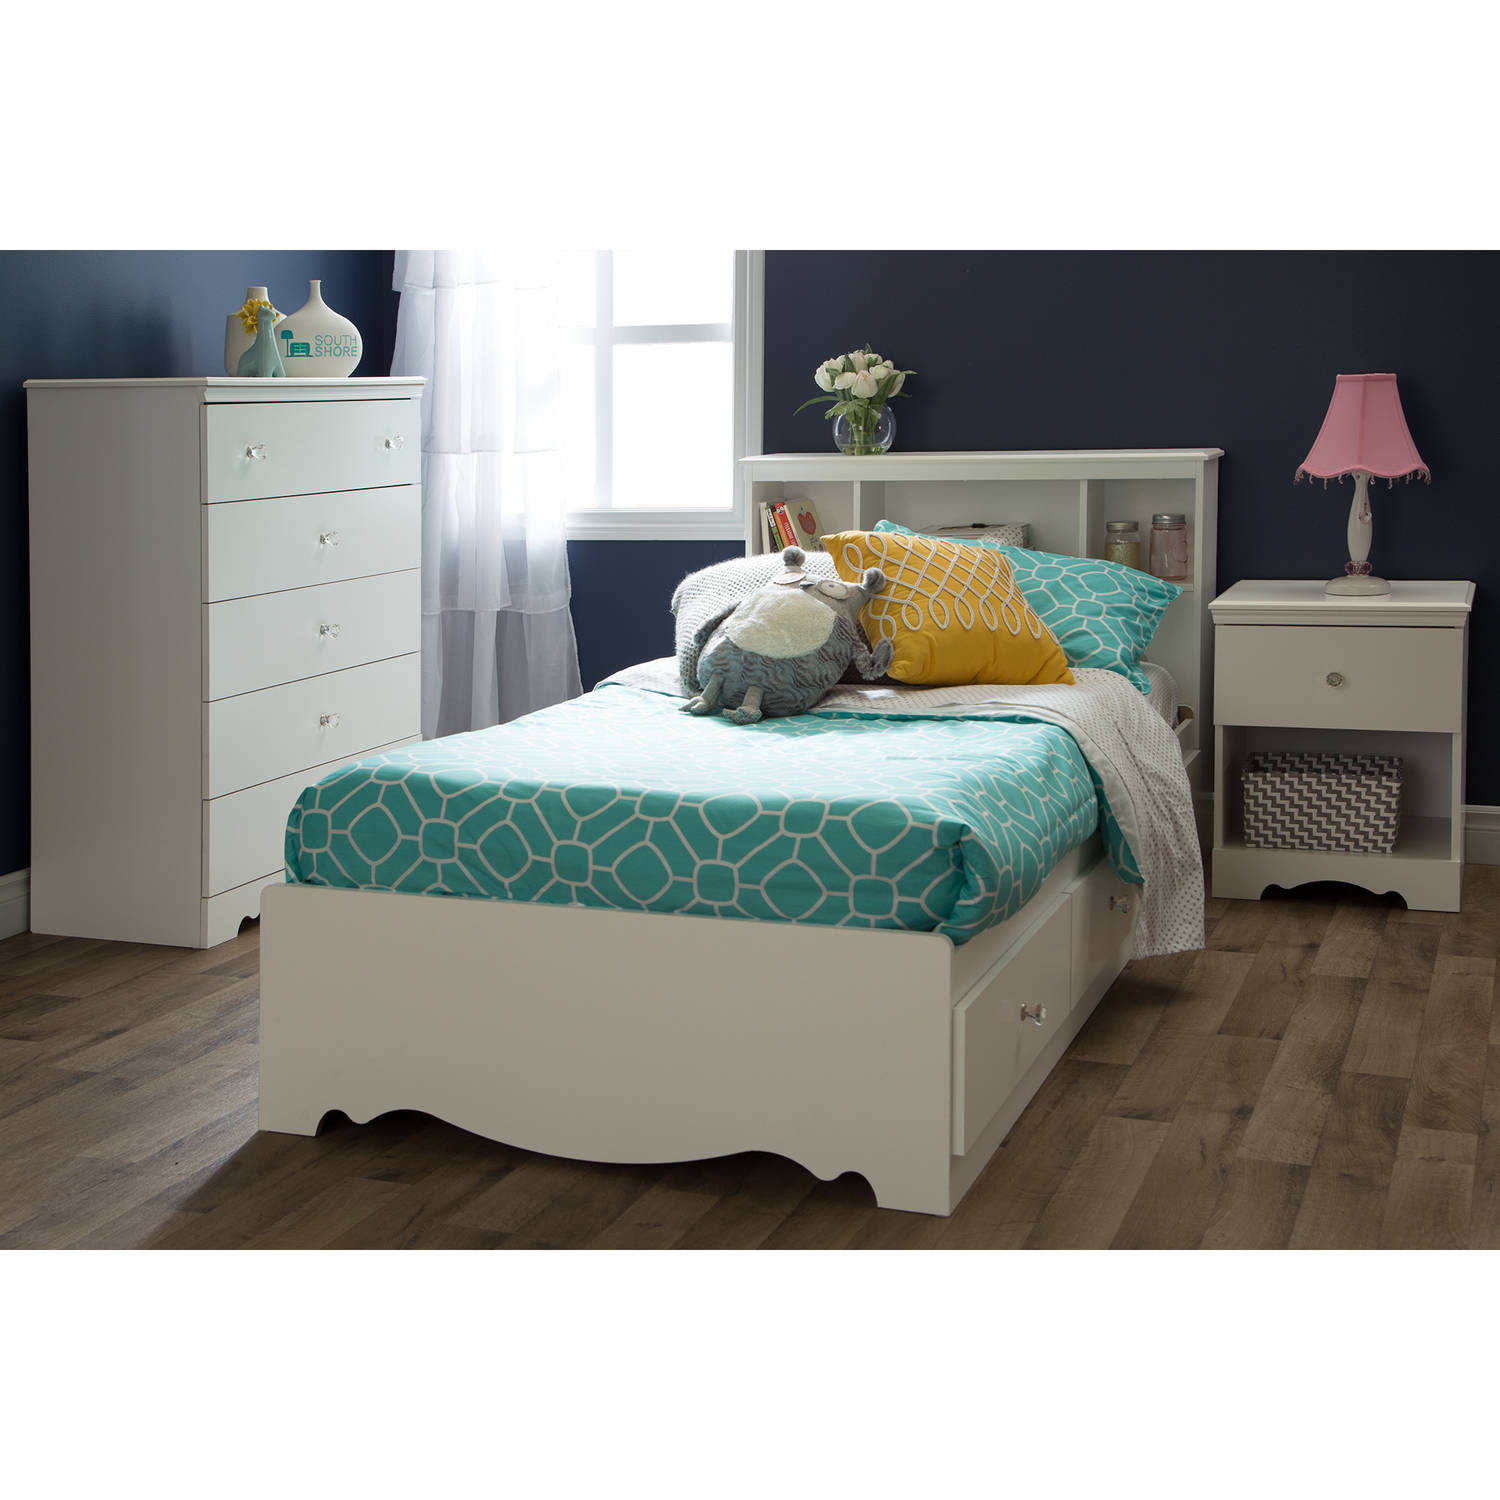 Kids Bedroom Sets Walmart
 South Shore Crystal Kids Bedroom Furniture Collection